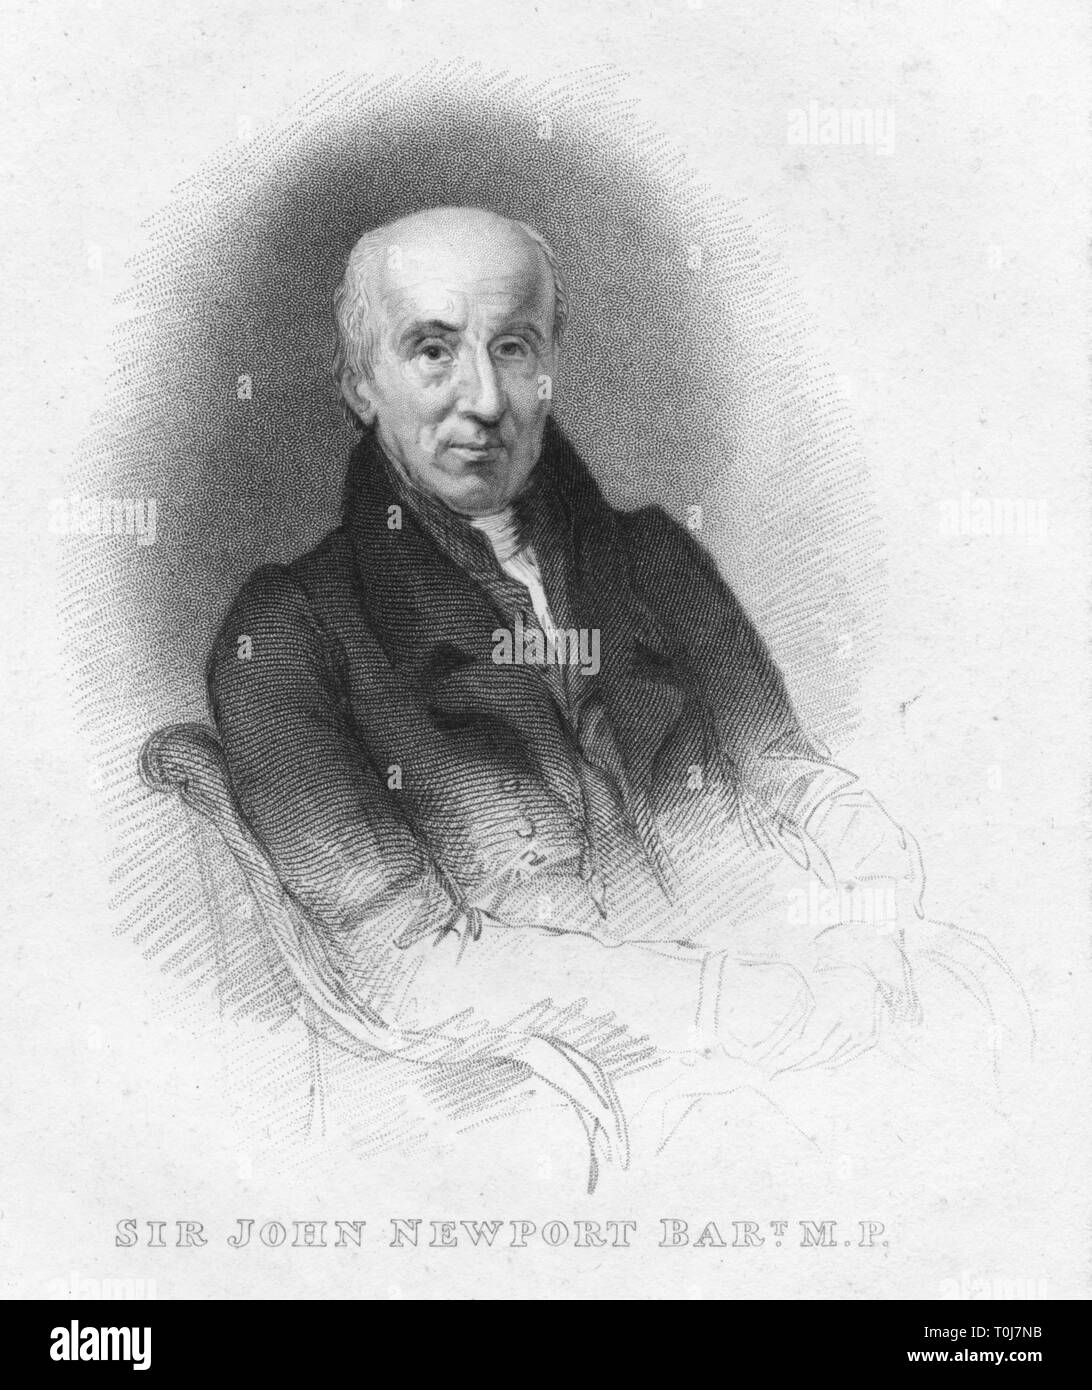 'Monsieur Jean Bart de Newport. M.P.', 1826. Créateur : Robert Cooper. Banque D'Images